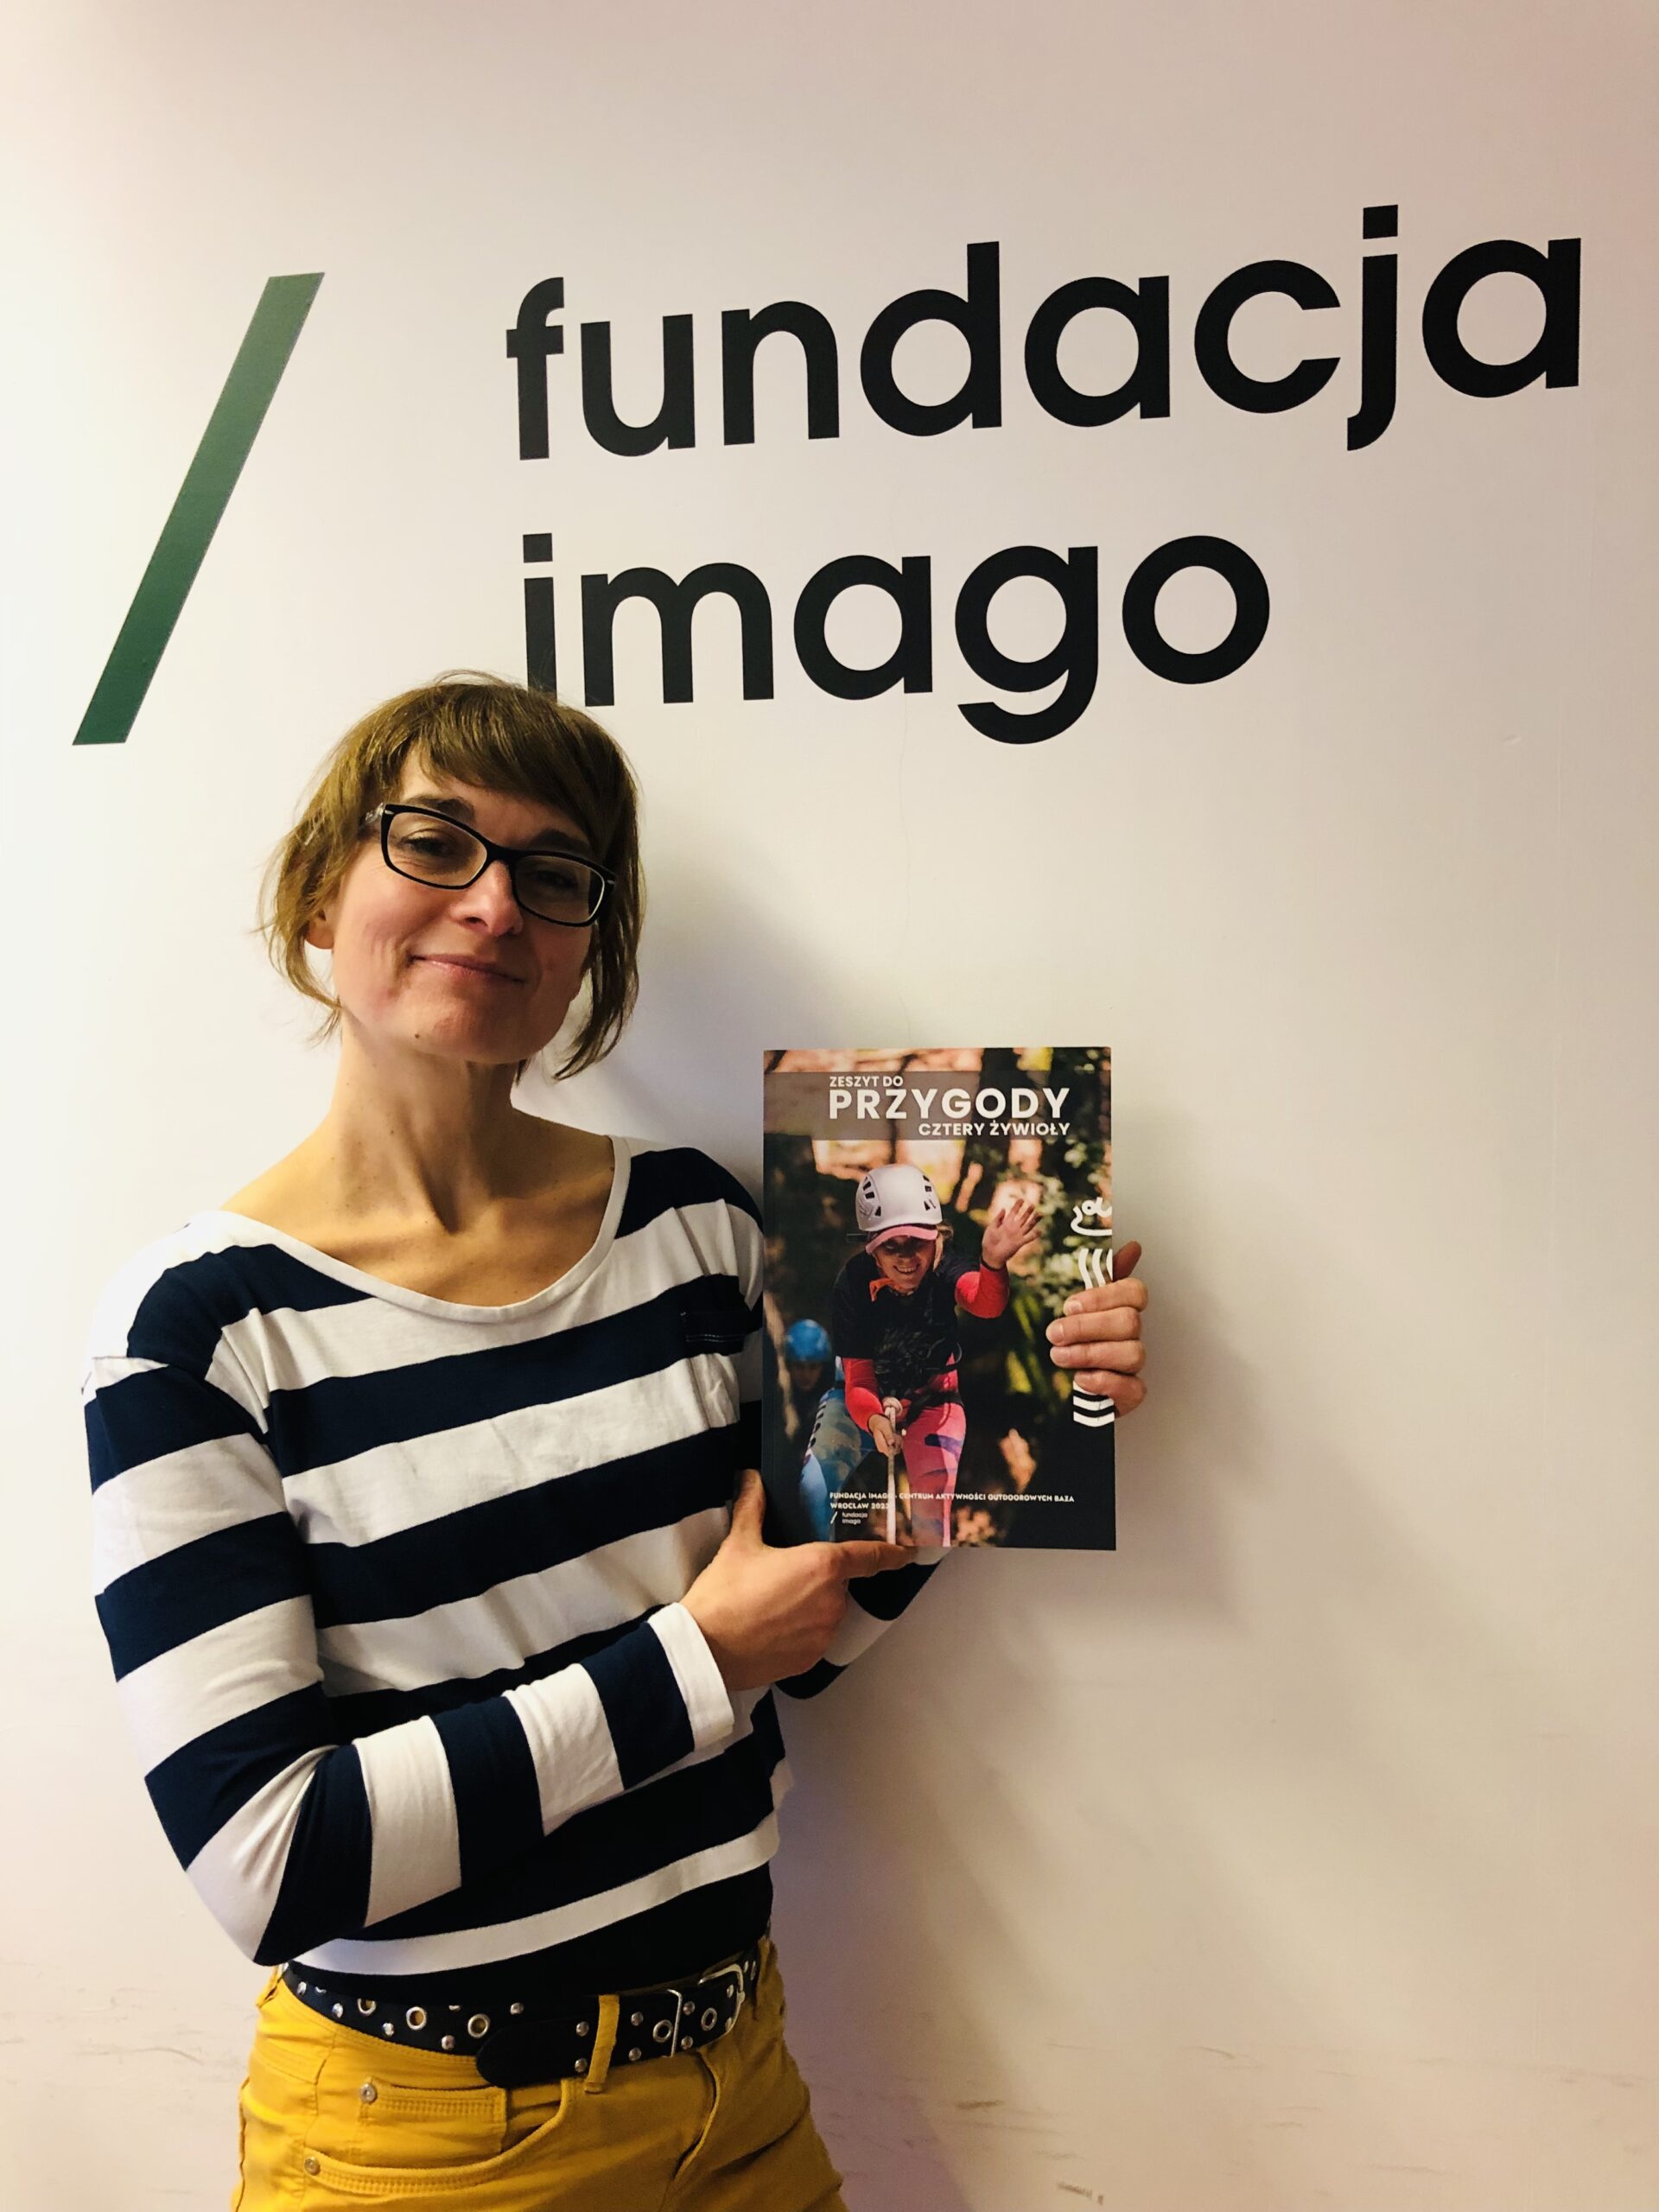 Uśmiechnięta Magdalena Stempska z Fundacji Imago prezentuje okładkę publikacji „Zeszyt do przygody”. Fotografia na tle białej ściany z logotypem Fundacji Imago.